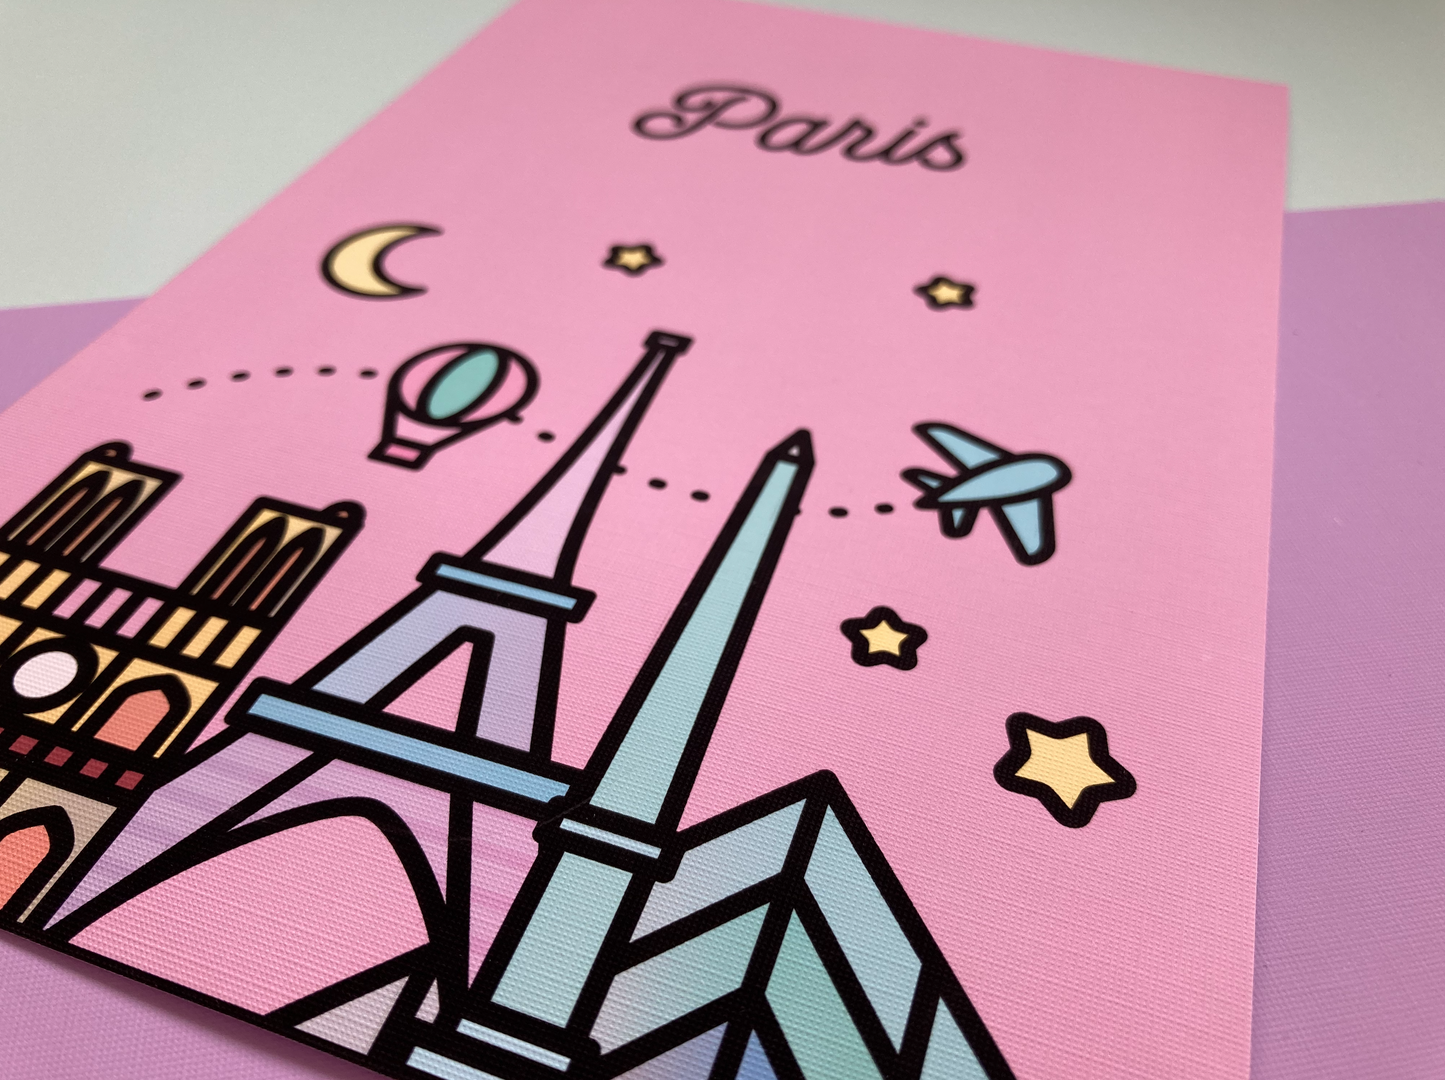 Pink Paris Skyline Art Print